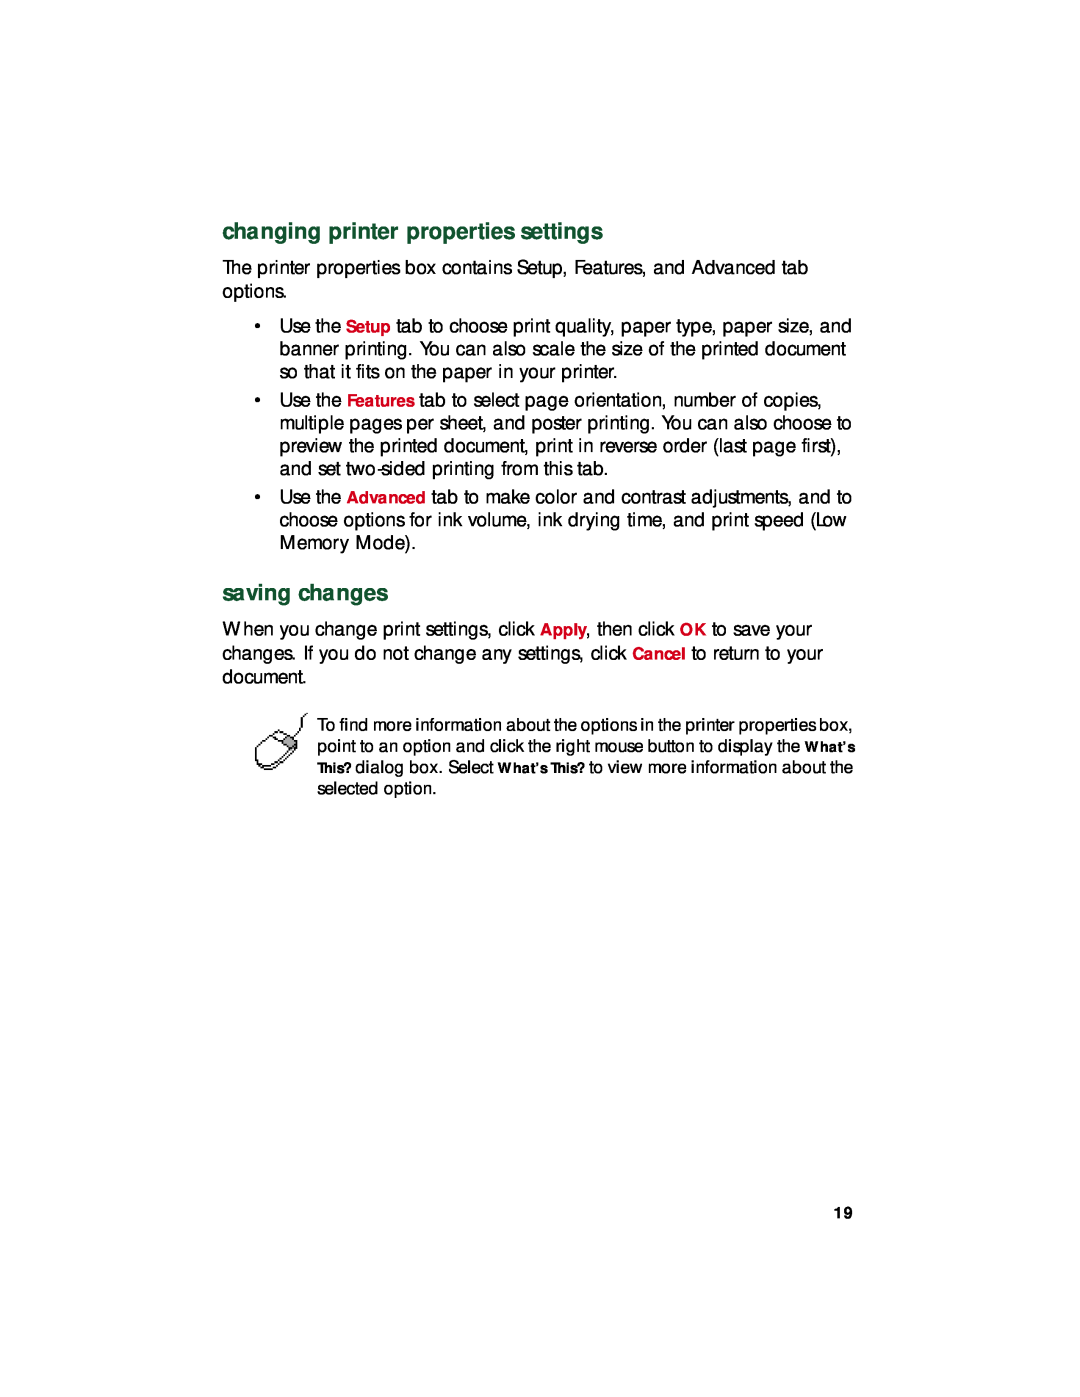 HP 920c, 948c, 940c manual changing printer properties settings, saving changes 